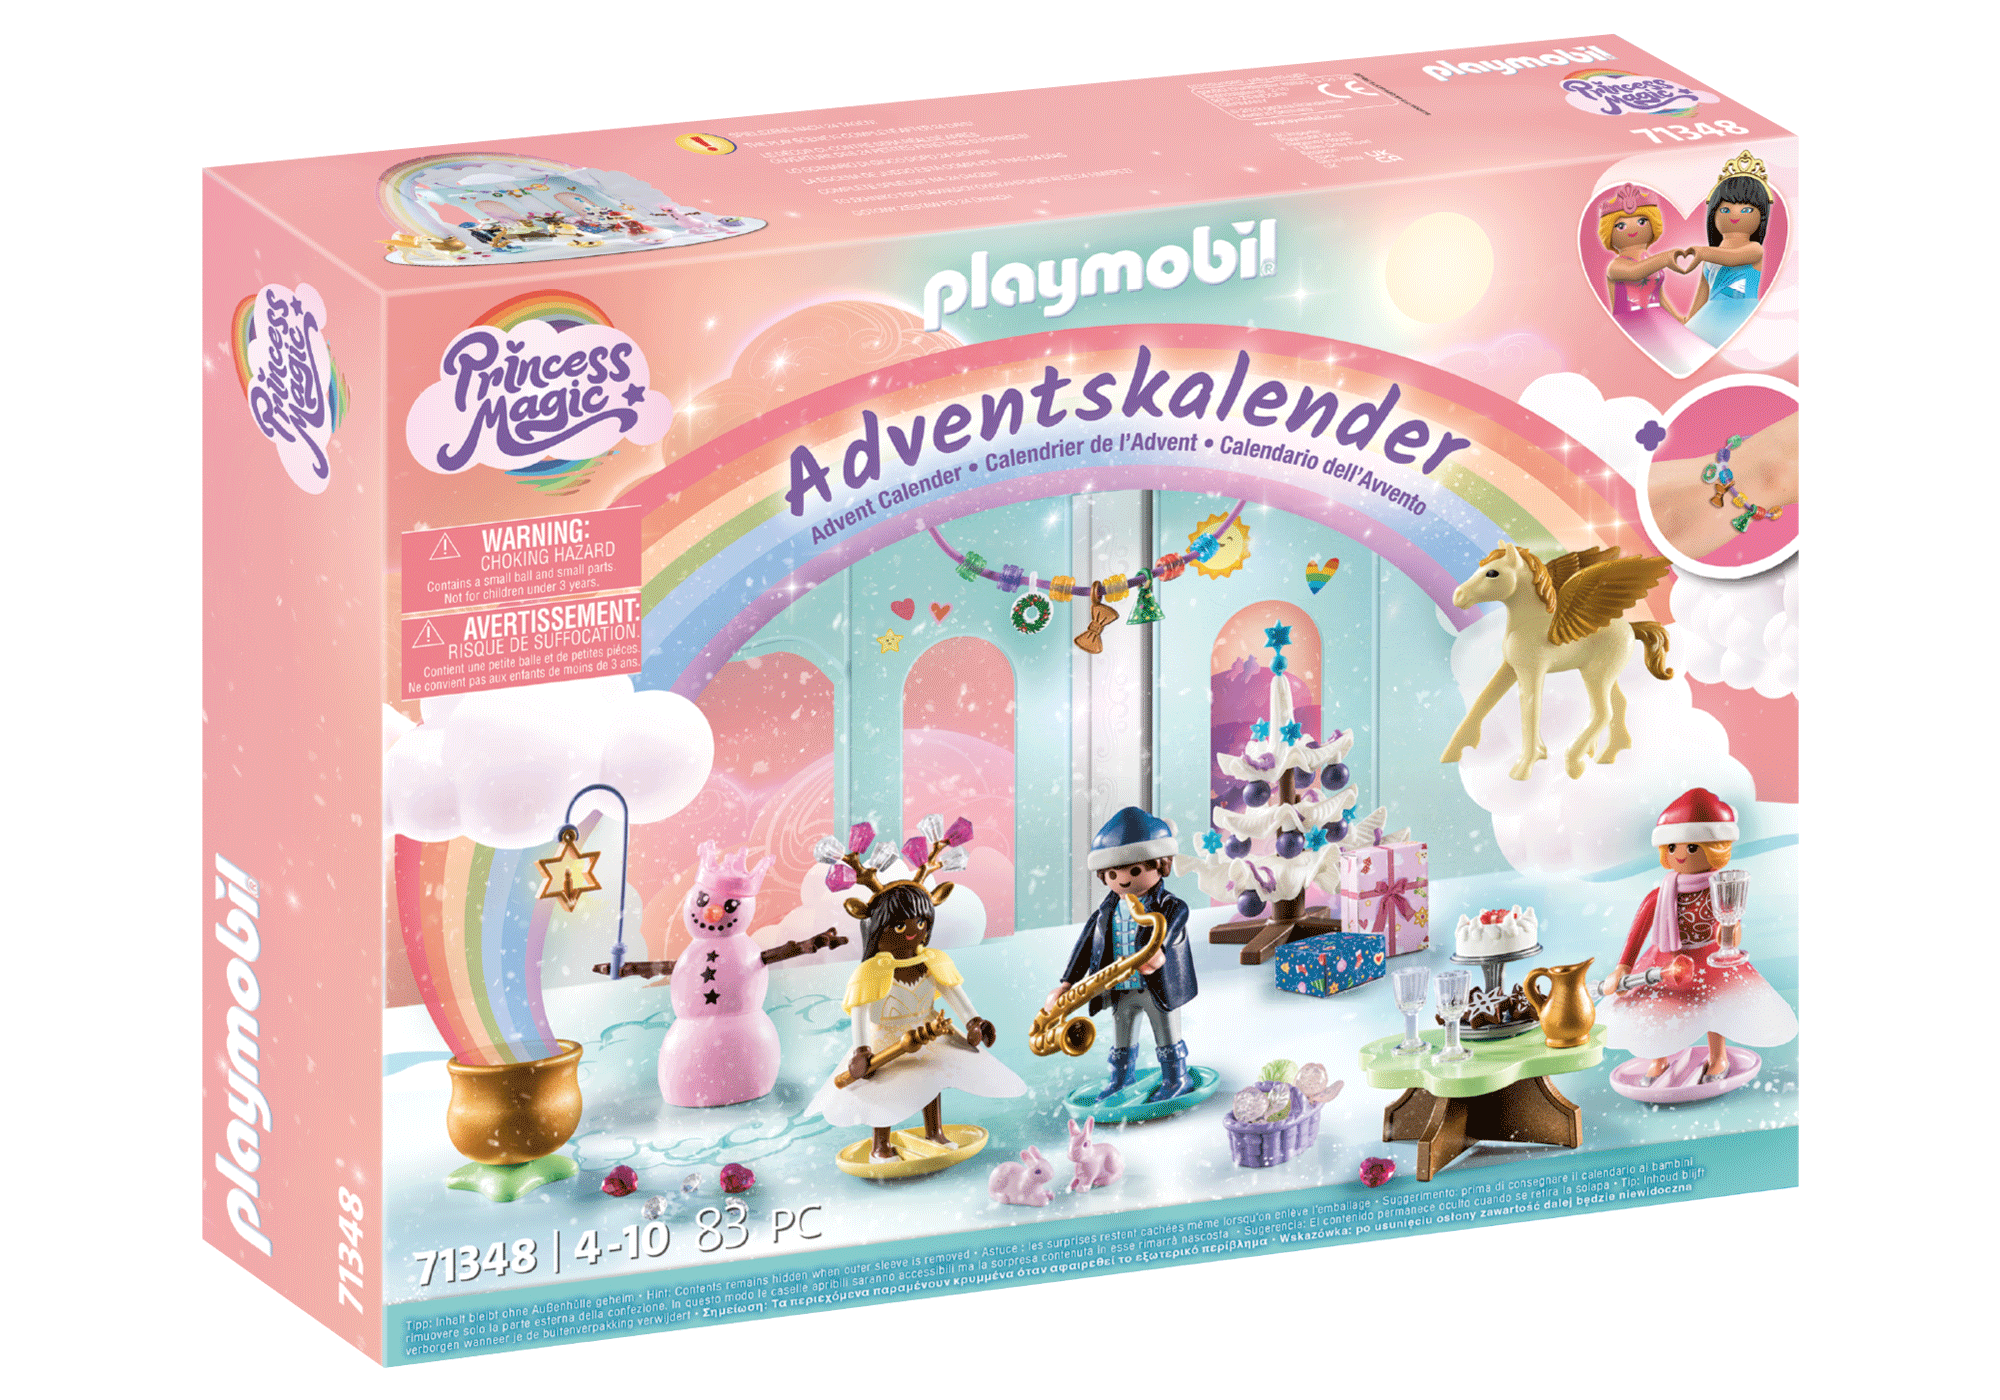 Playmobil-Advent Calendar: Christmas Under the Rainbow-71348-Legacy Toys